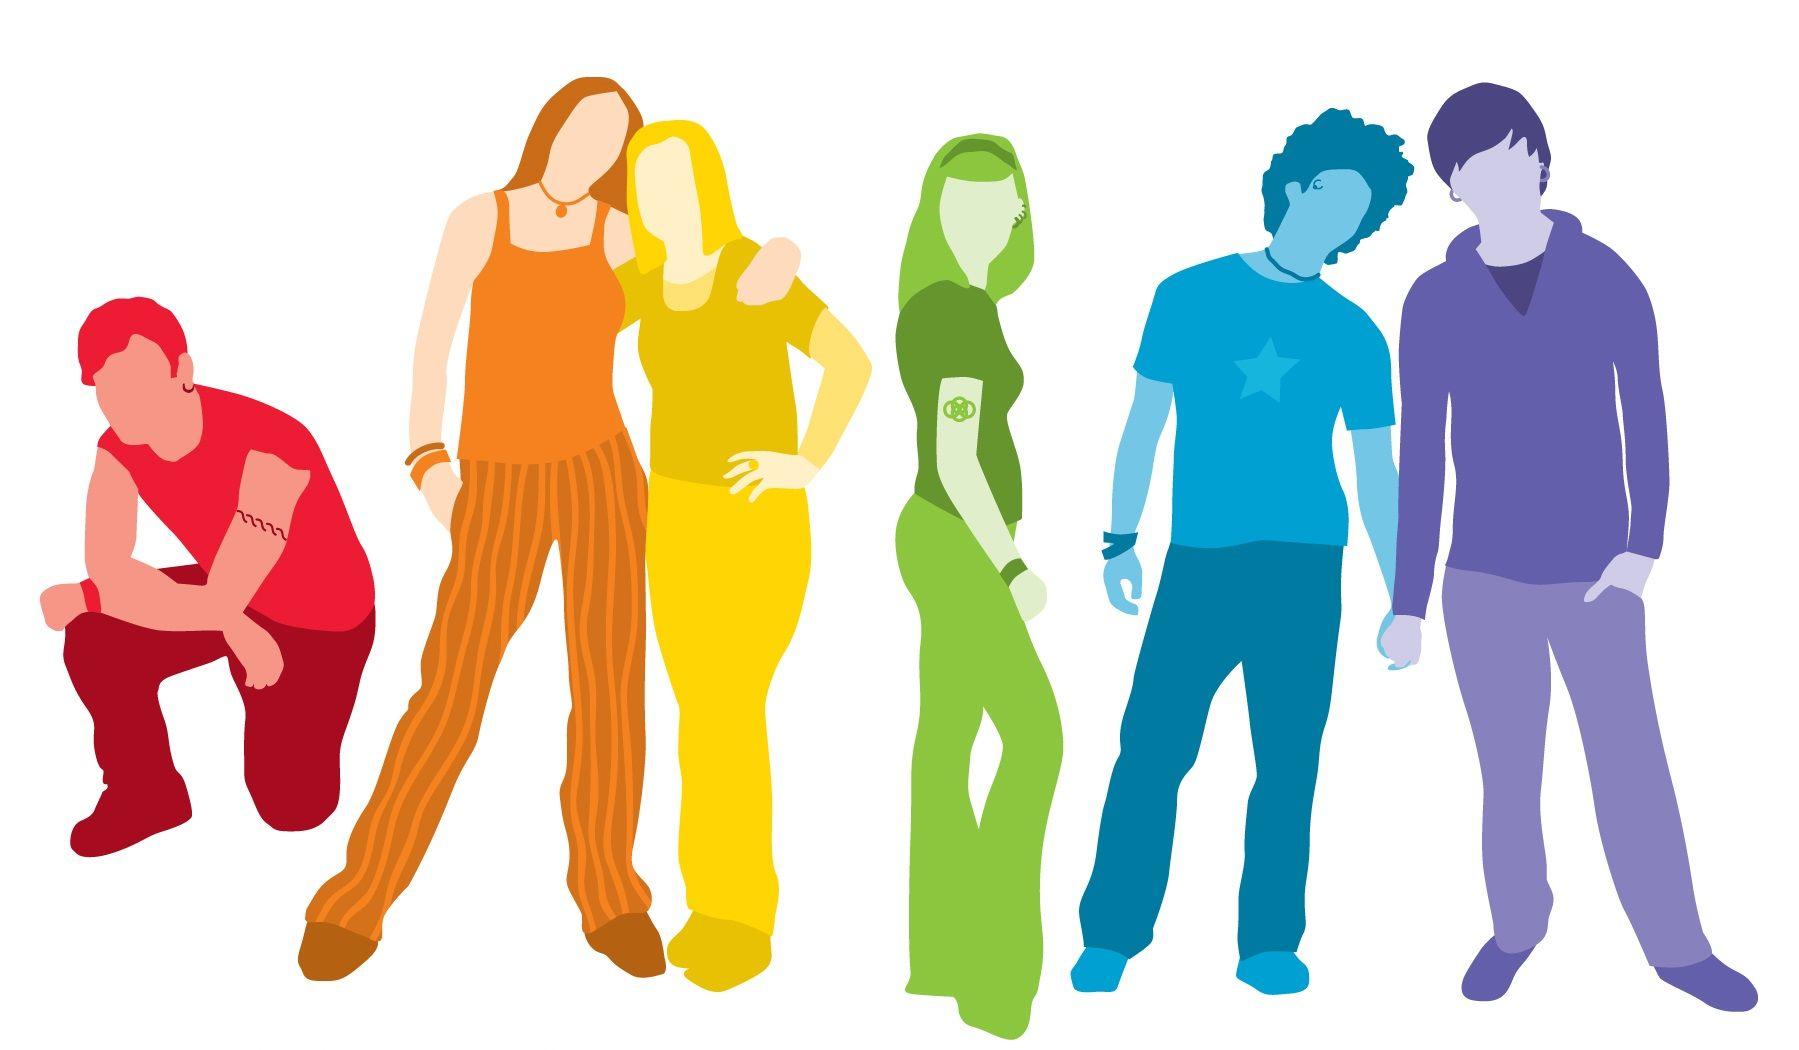 Rainbow Person Logo - Rainbow Youth logo no text - PARN